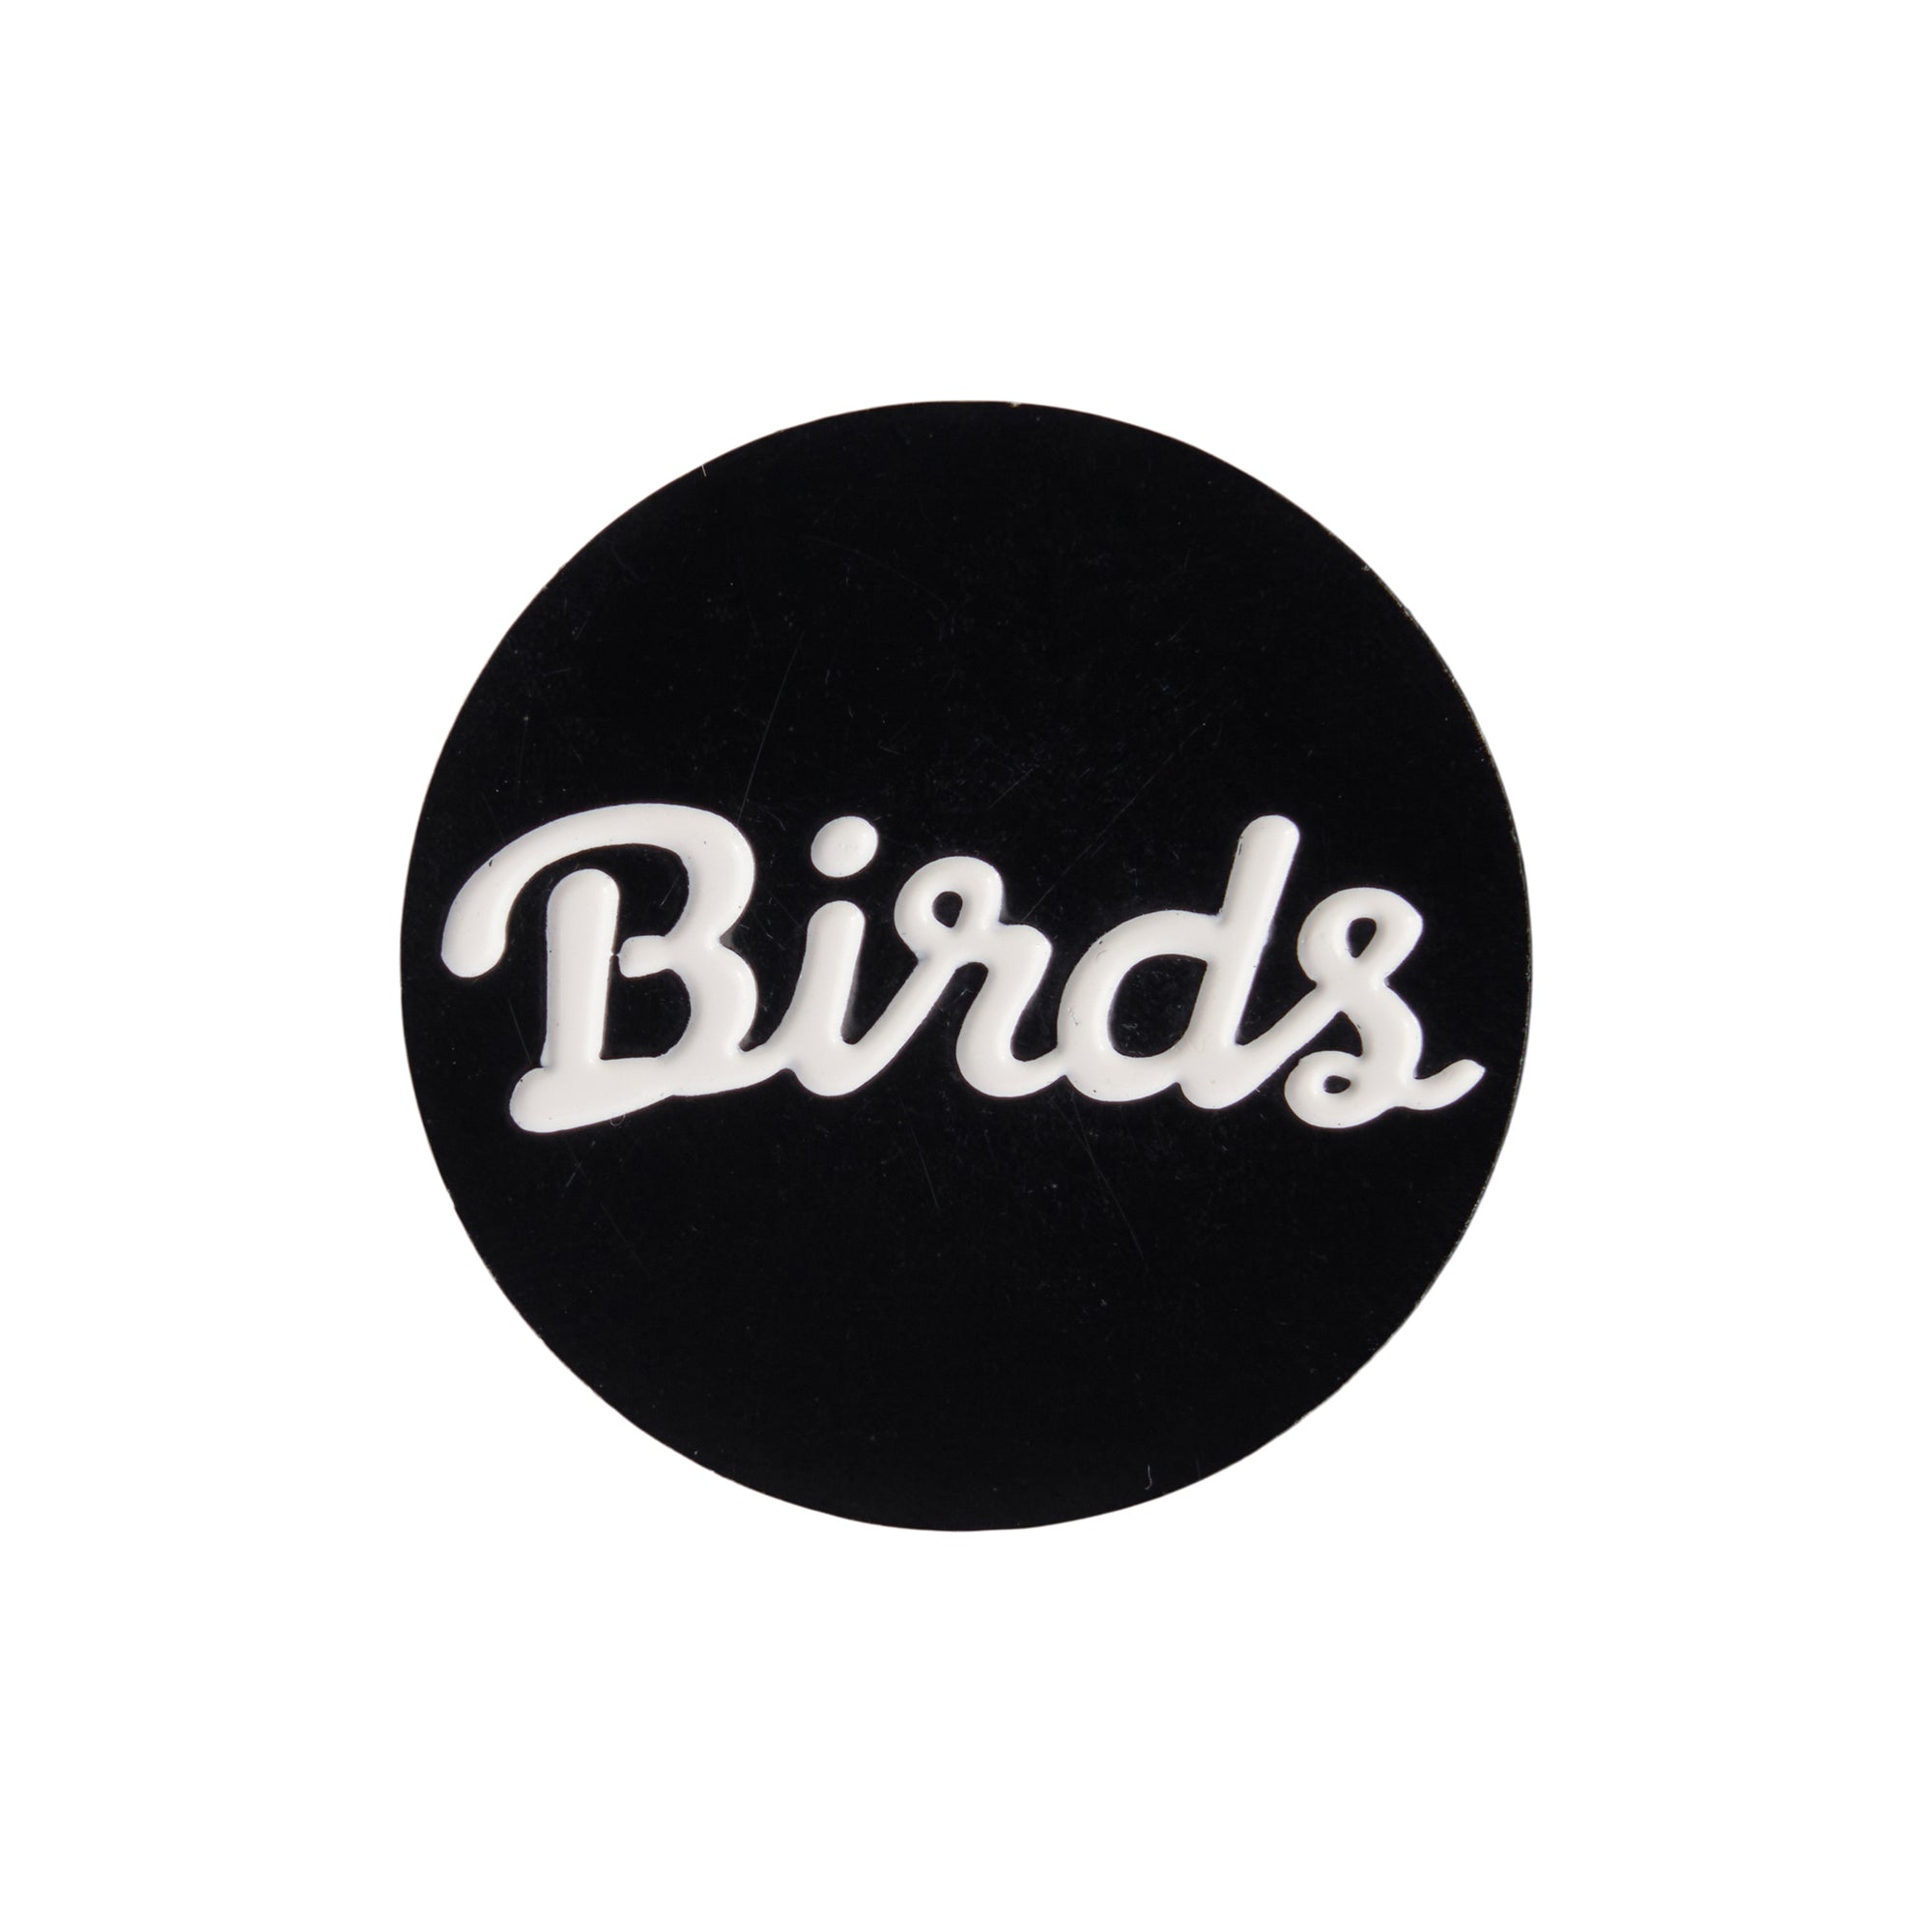    birds-of-condor-black-white-golf-course-ball-mark-marker-front